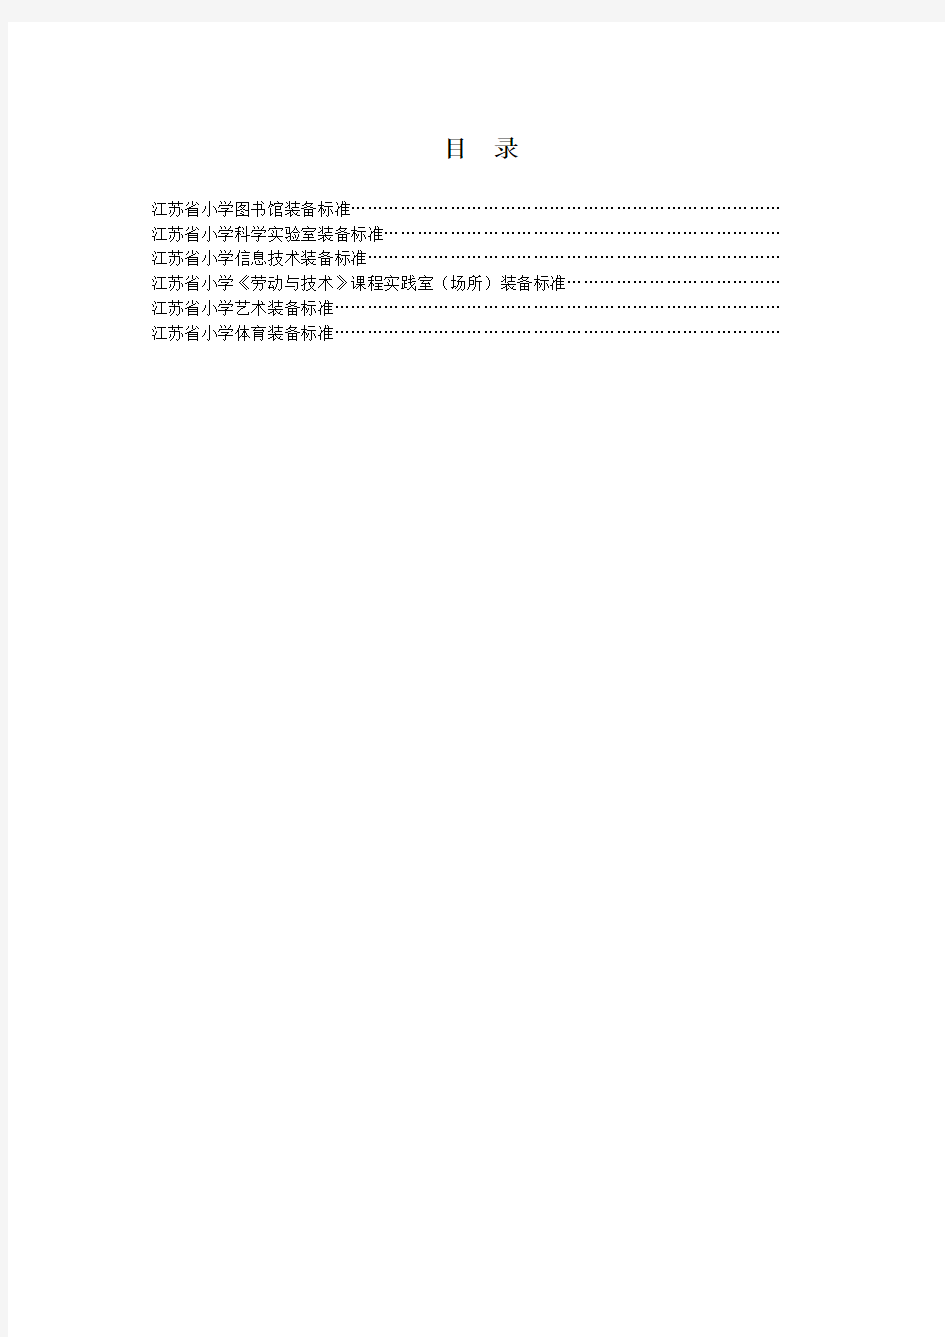 江苏省中小学教育技术装备标准